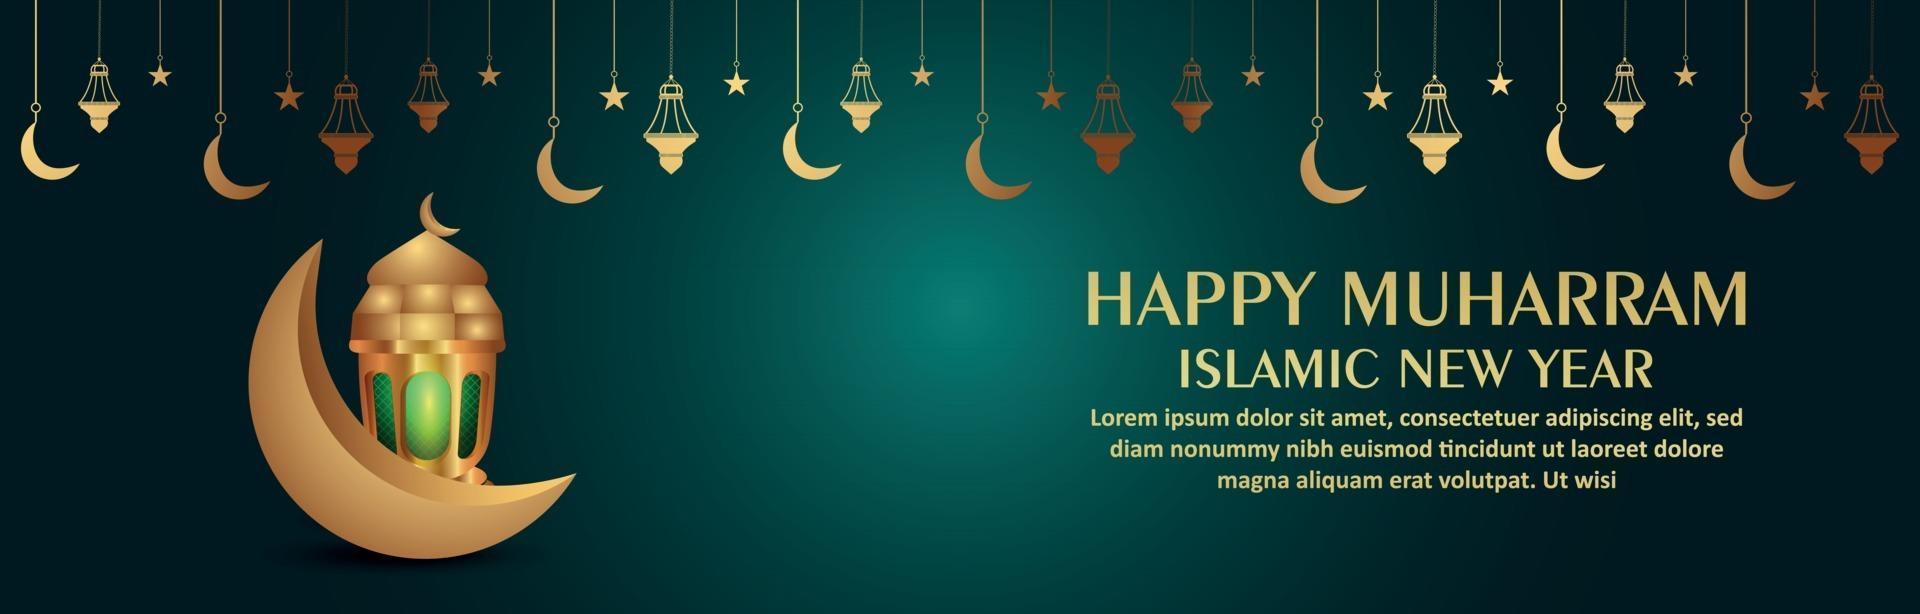 joyeux nouvel an islamique réaliste muharram avec illustration vectorielle lanterne et lune vecteur